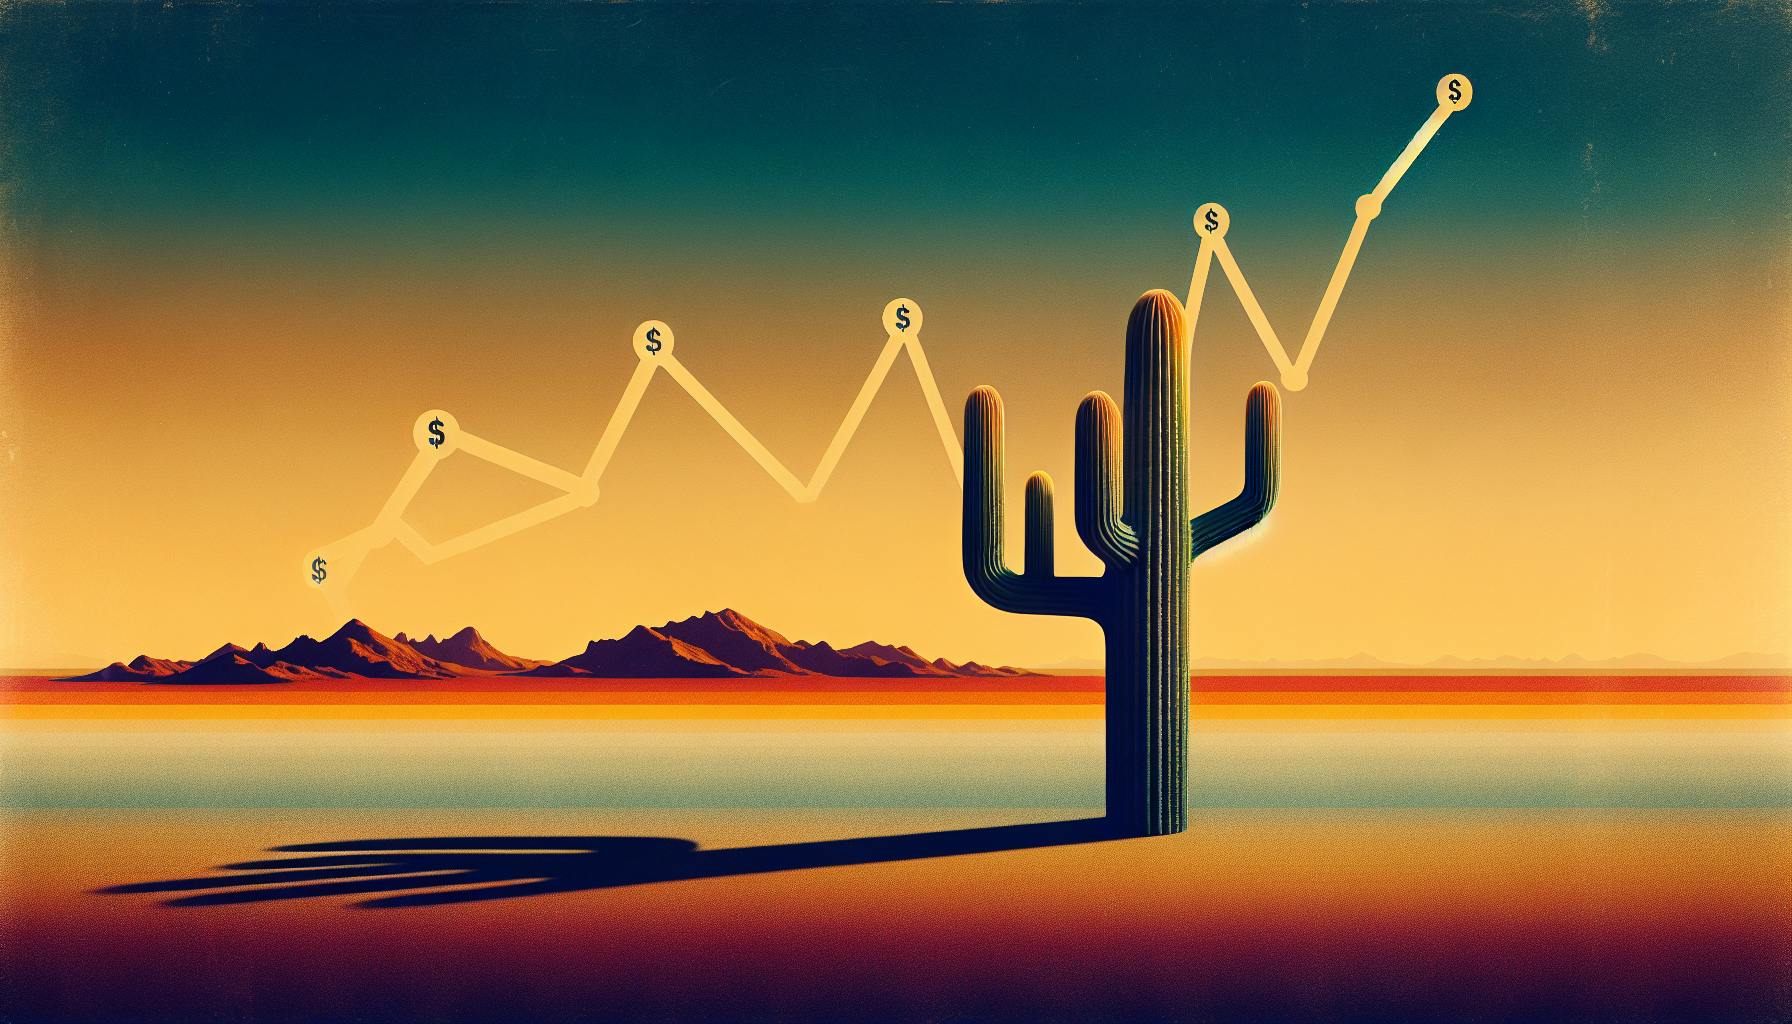 Accounting Salaries in Arizona: Desert Dollars and Finance